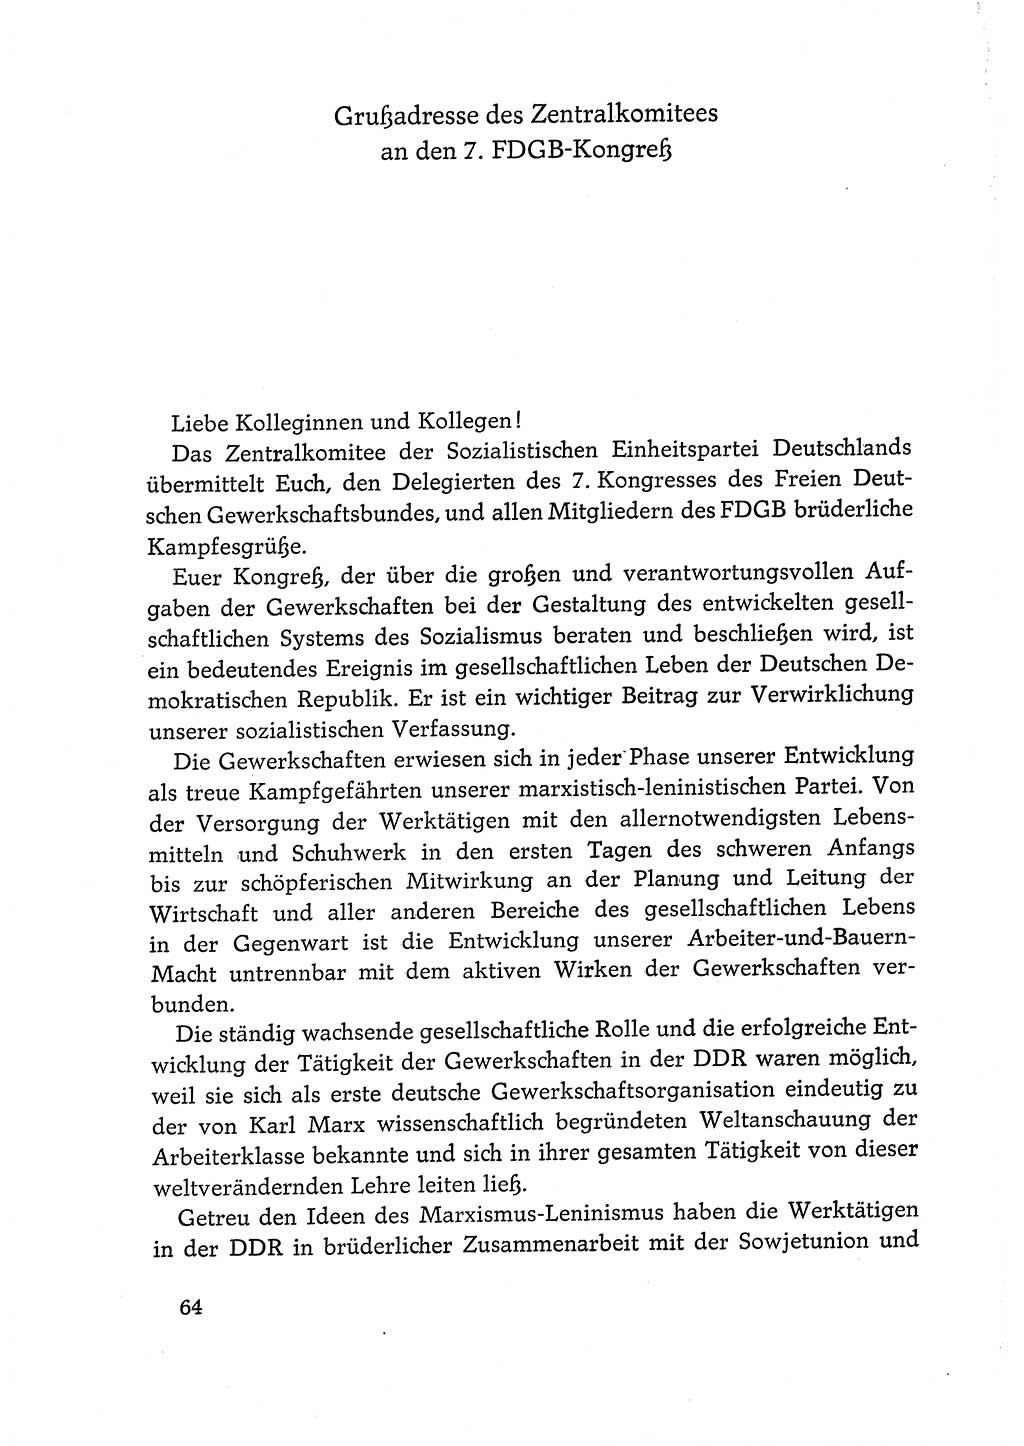 Dokumente der Sozialistischen Einheitspartei Deutschlands (SED) [Deutsche Demokratische Republik (DDR)] 1968-1969, Seite 64 (Dok. SED DDR 1968-1969, S. 64)